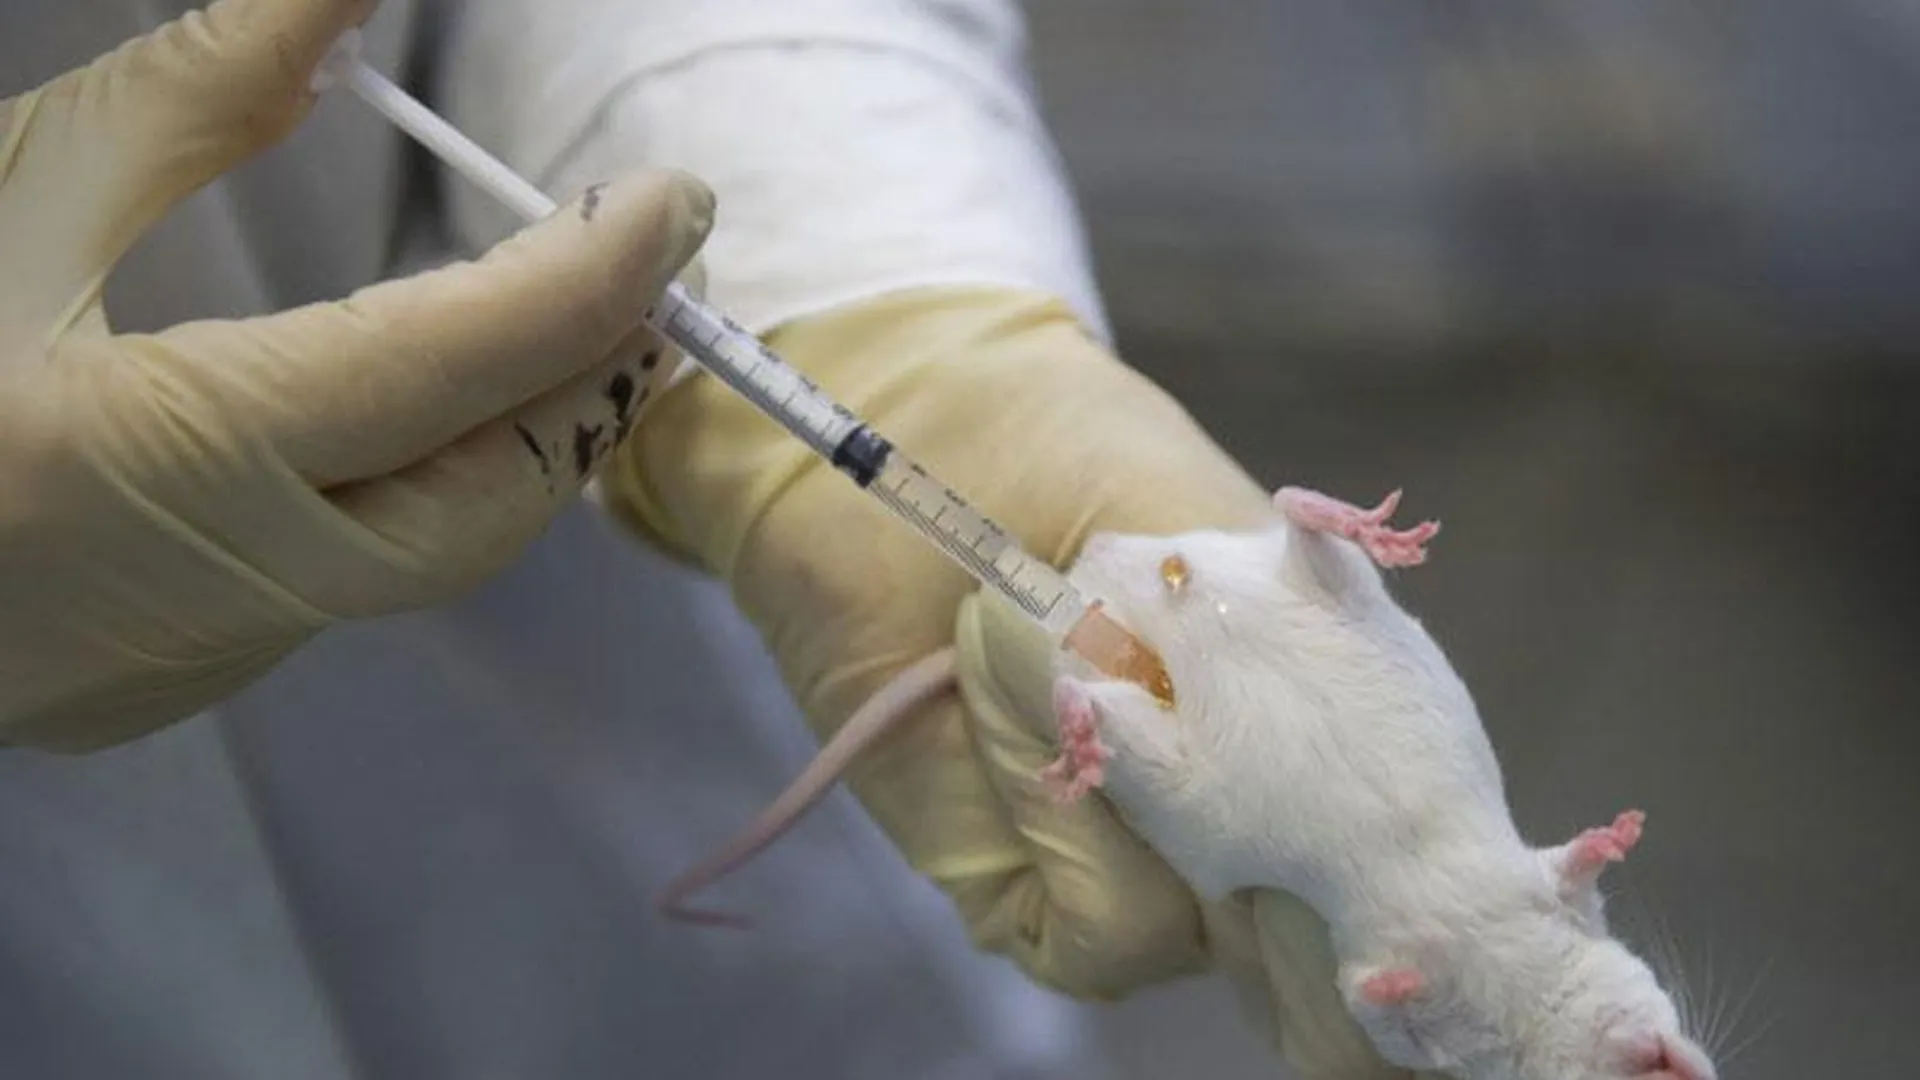 Ученые вырастили орган мыши в теле крысы